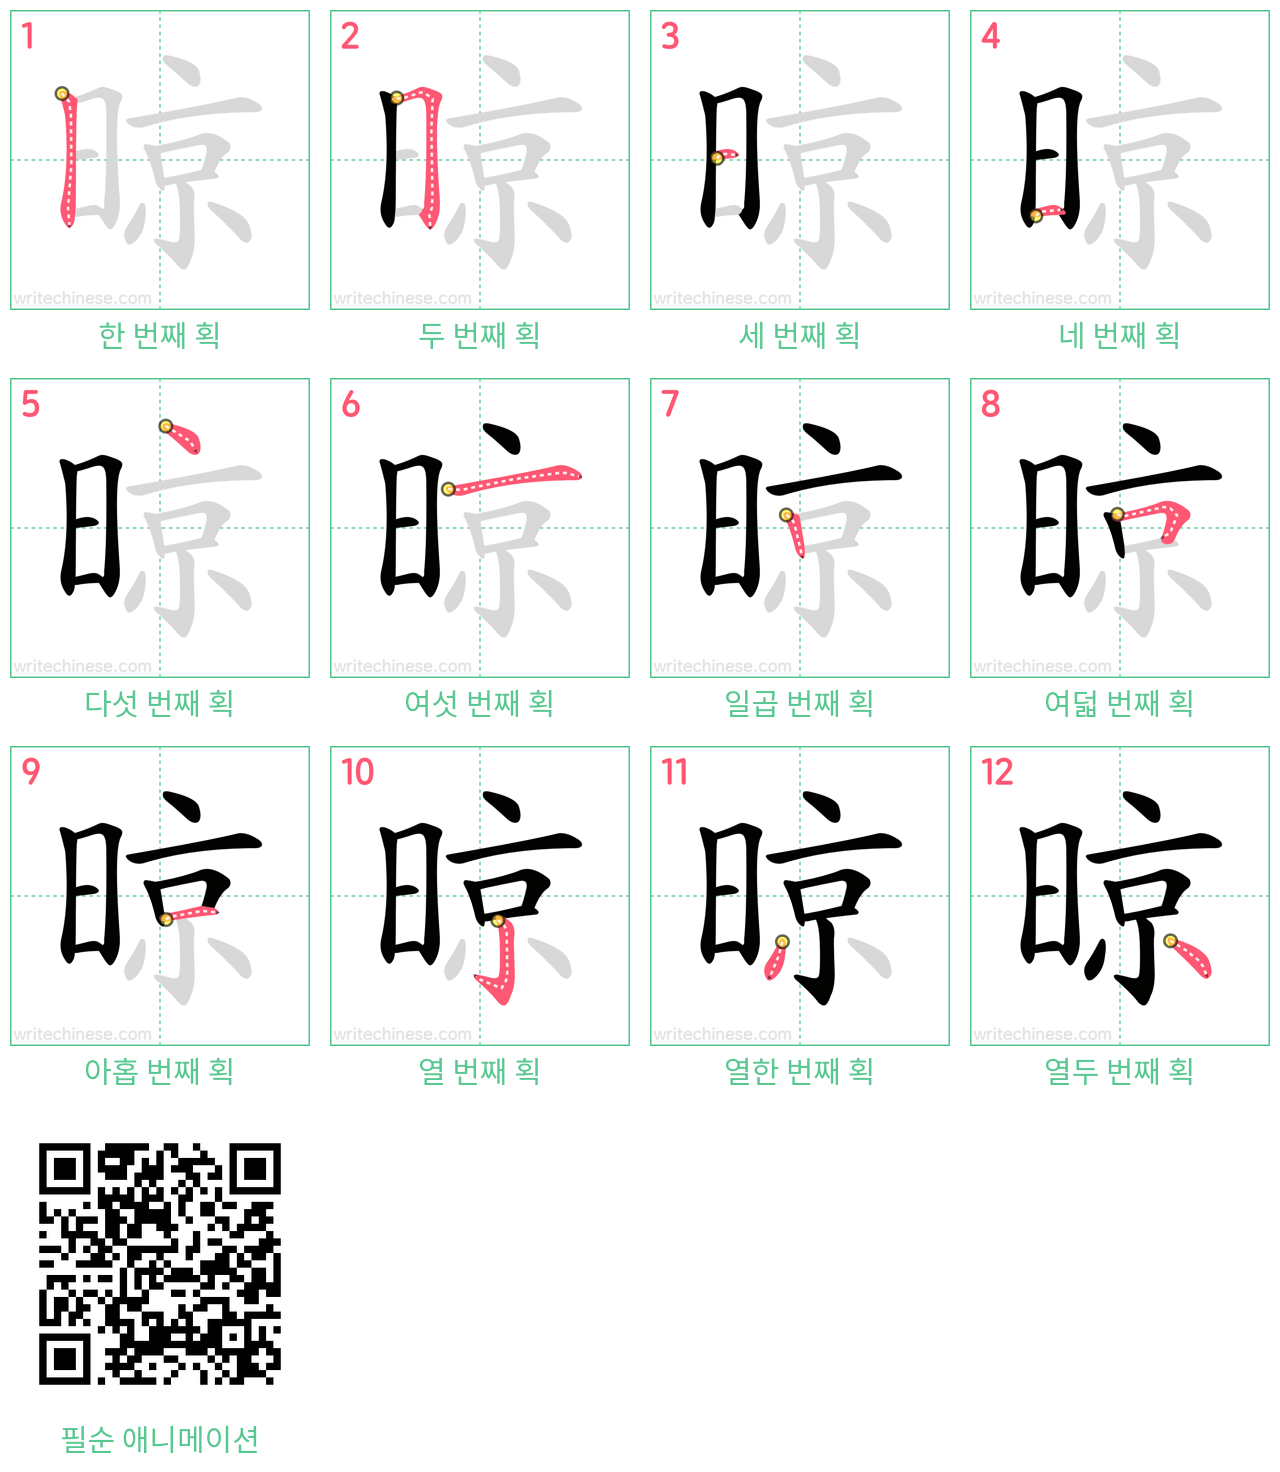 晾 step-by-step stroke order diagrams